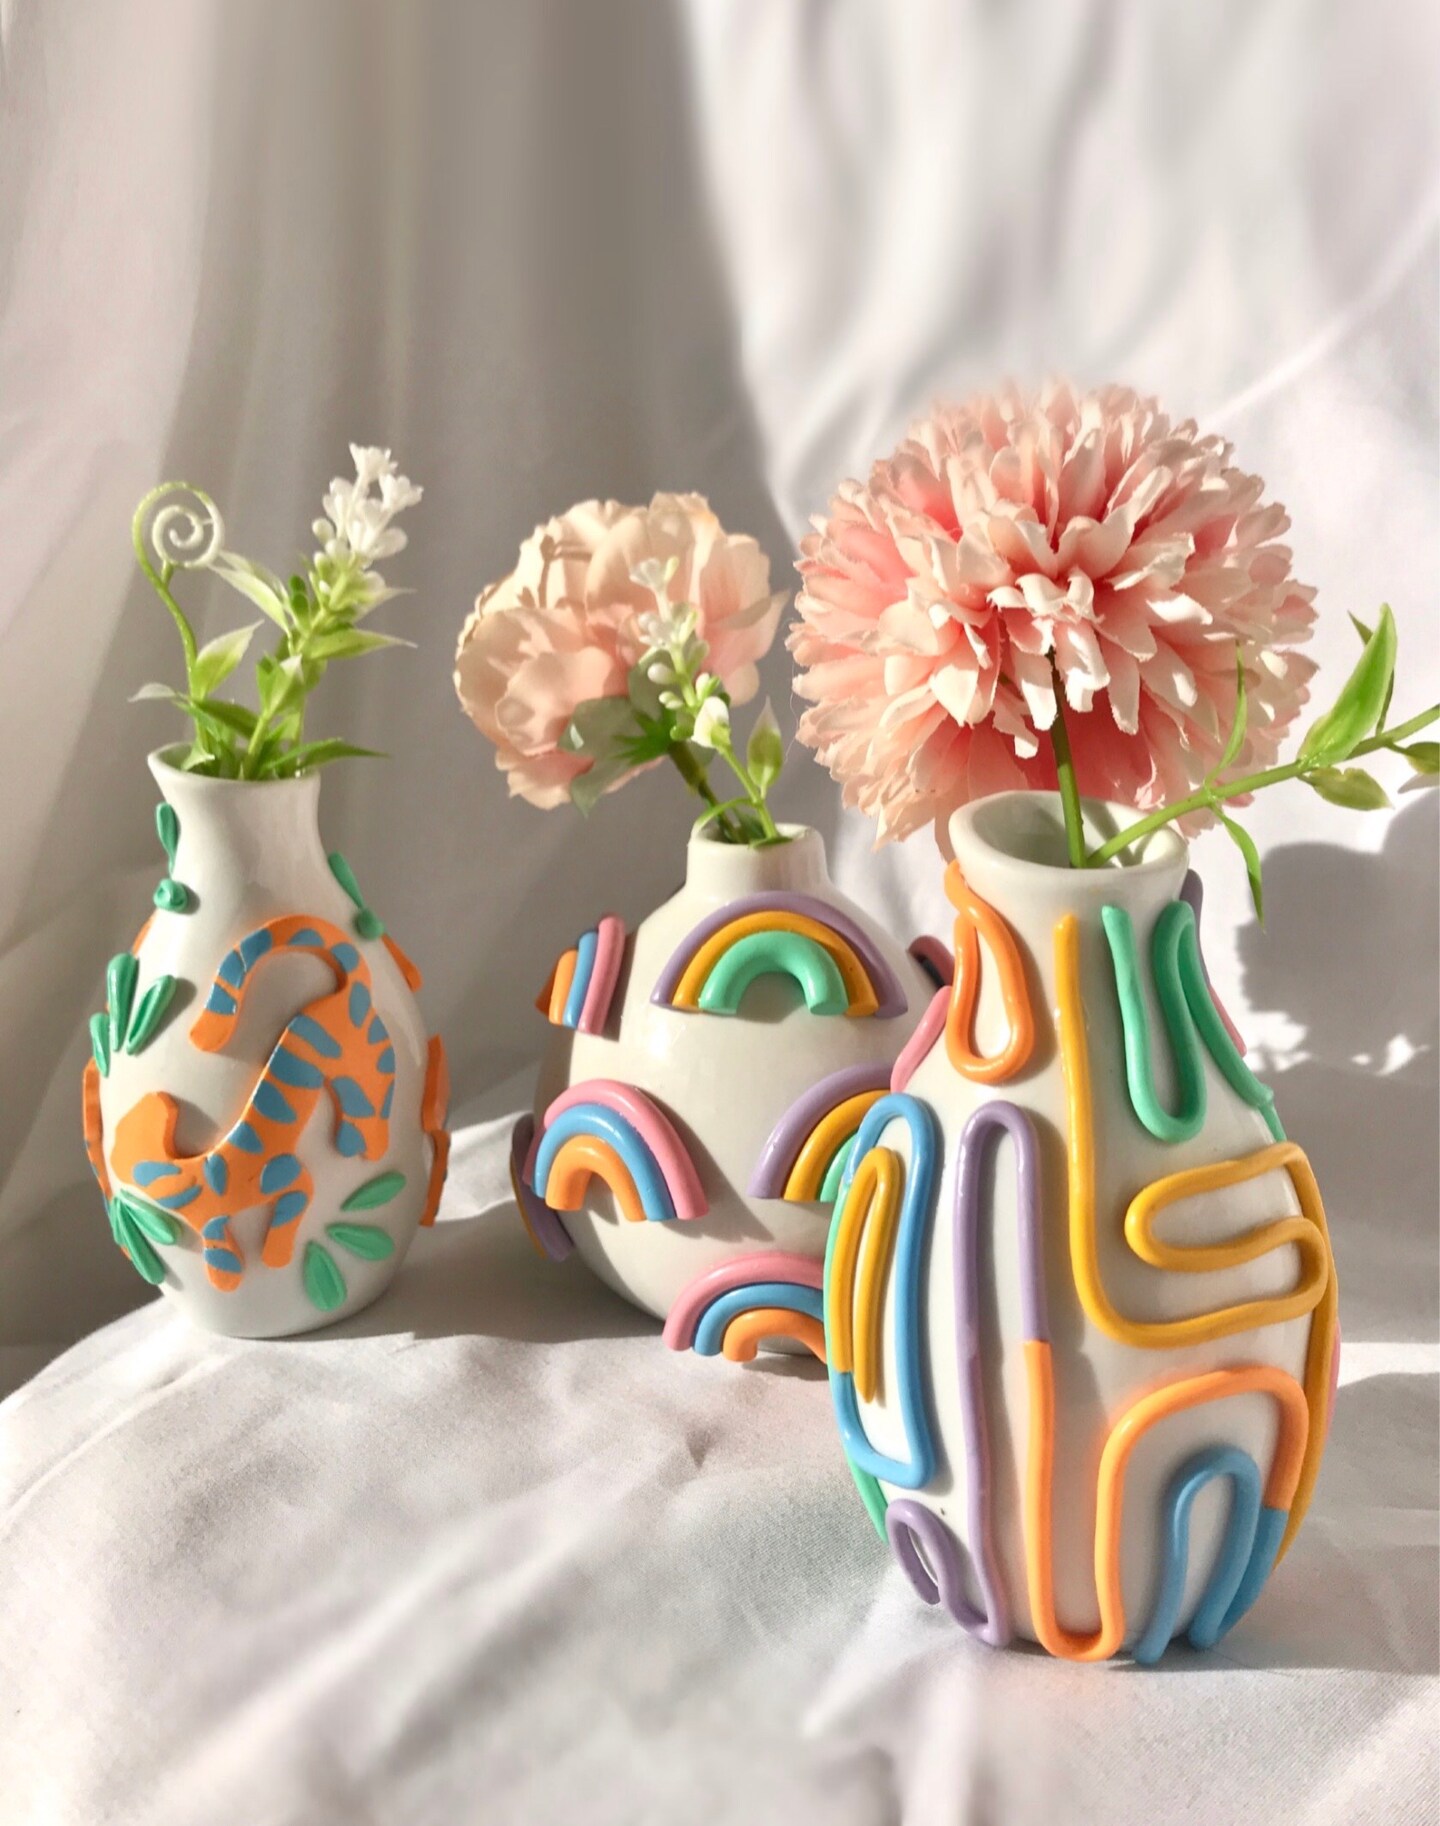 Retro Eclectic Colorful Bud Vase, Cute Ceramic Vase, Rainbow Pot Planter, Modern ceramic vase, pastel color ceramics, Boho home decor 211095080541487104